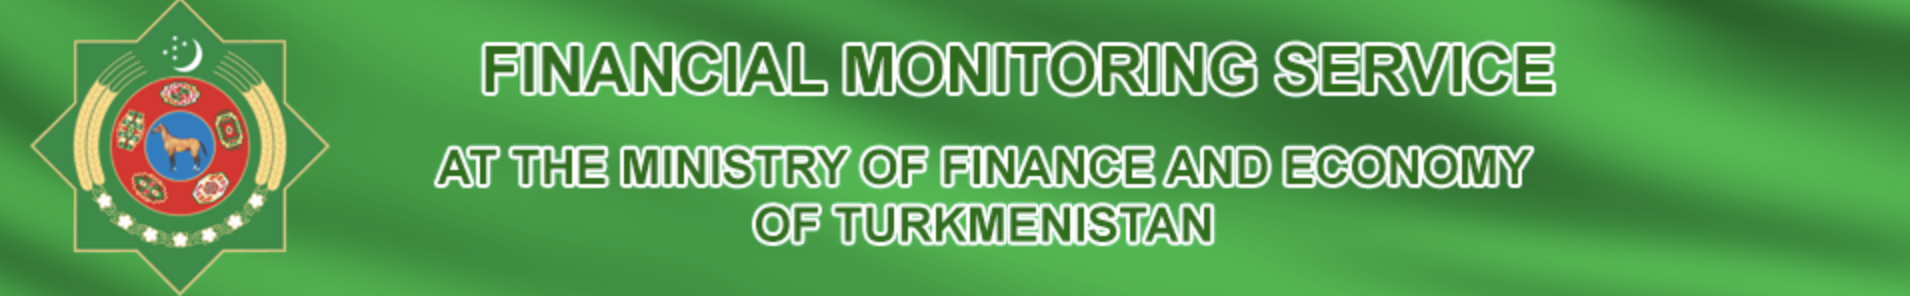 Maliye Bakanlığı türkmenistan logosu